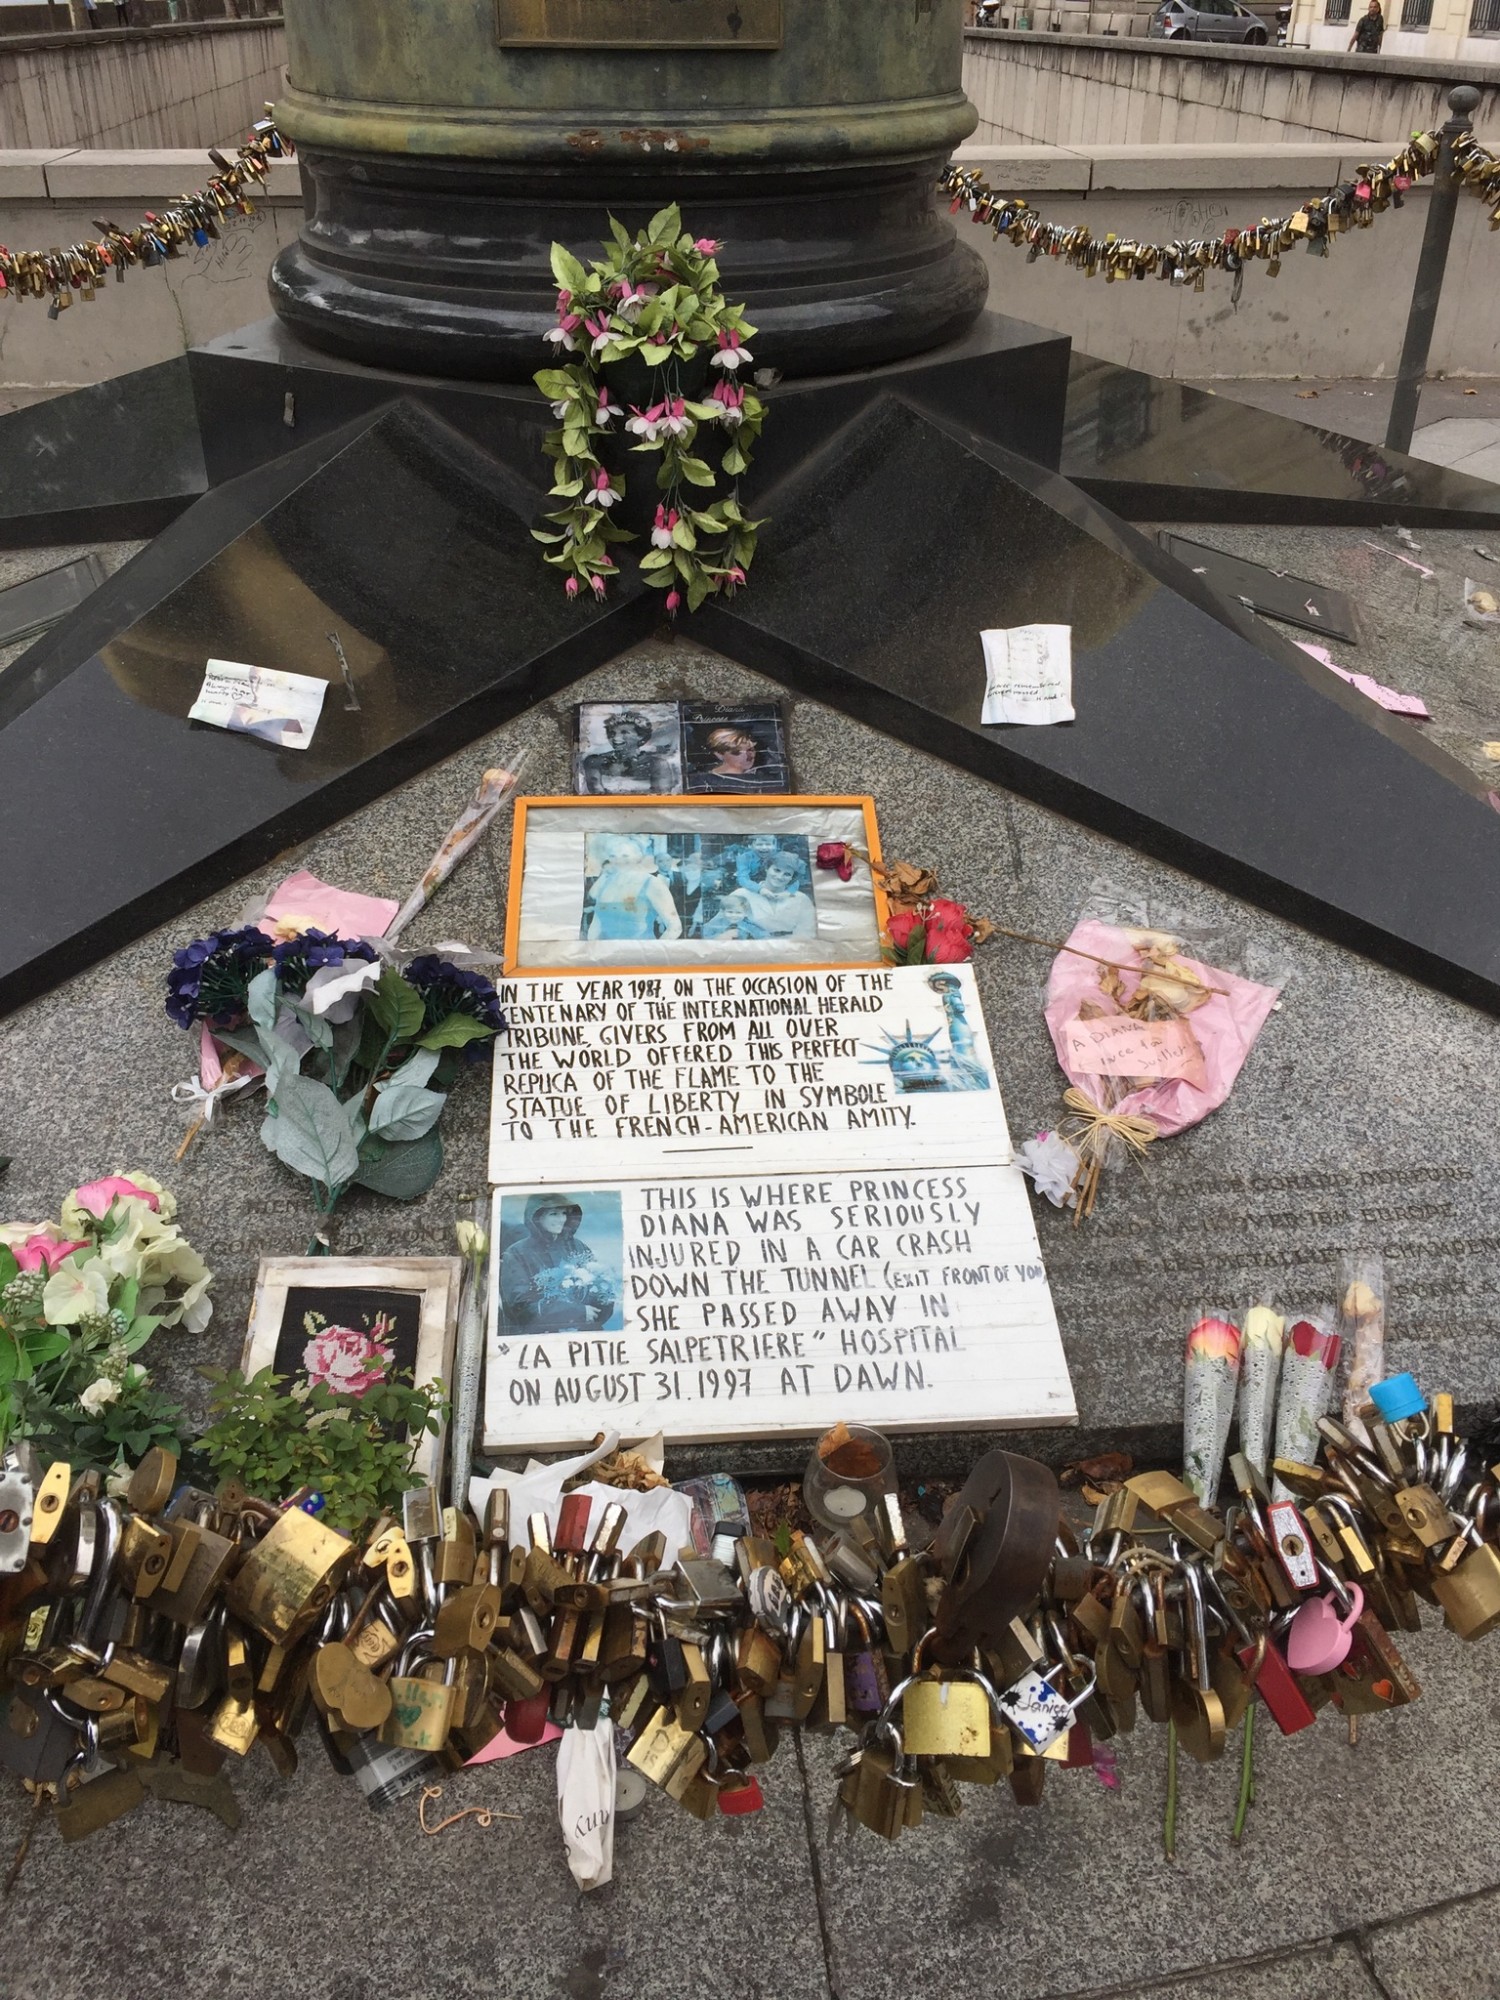 Frihedens Flammen er blevet et uofficielt monument for Prinsesse Diana død i 1997